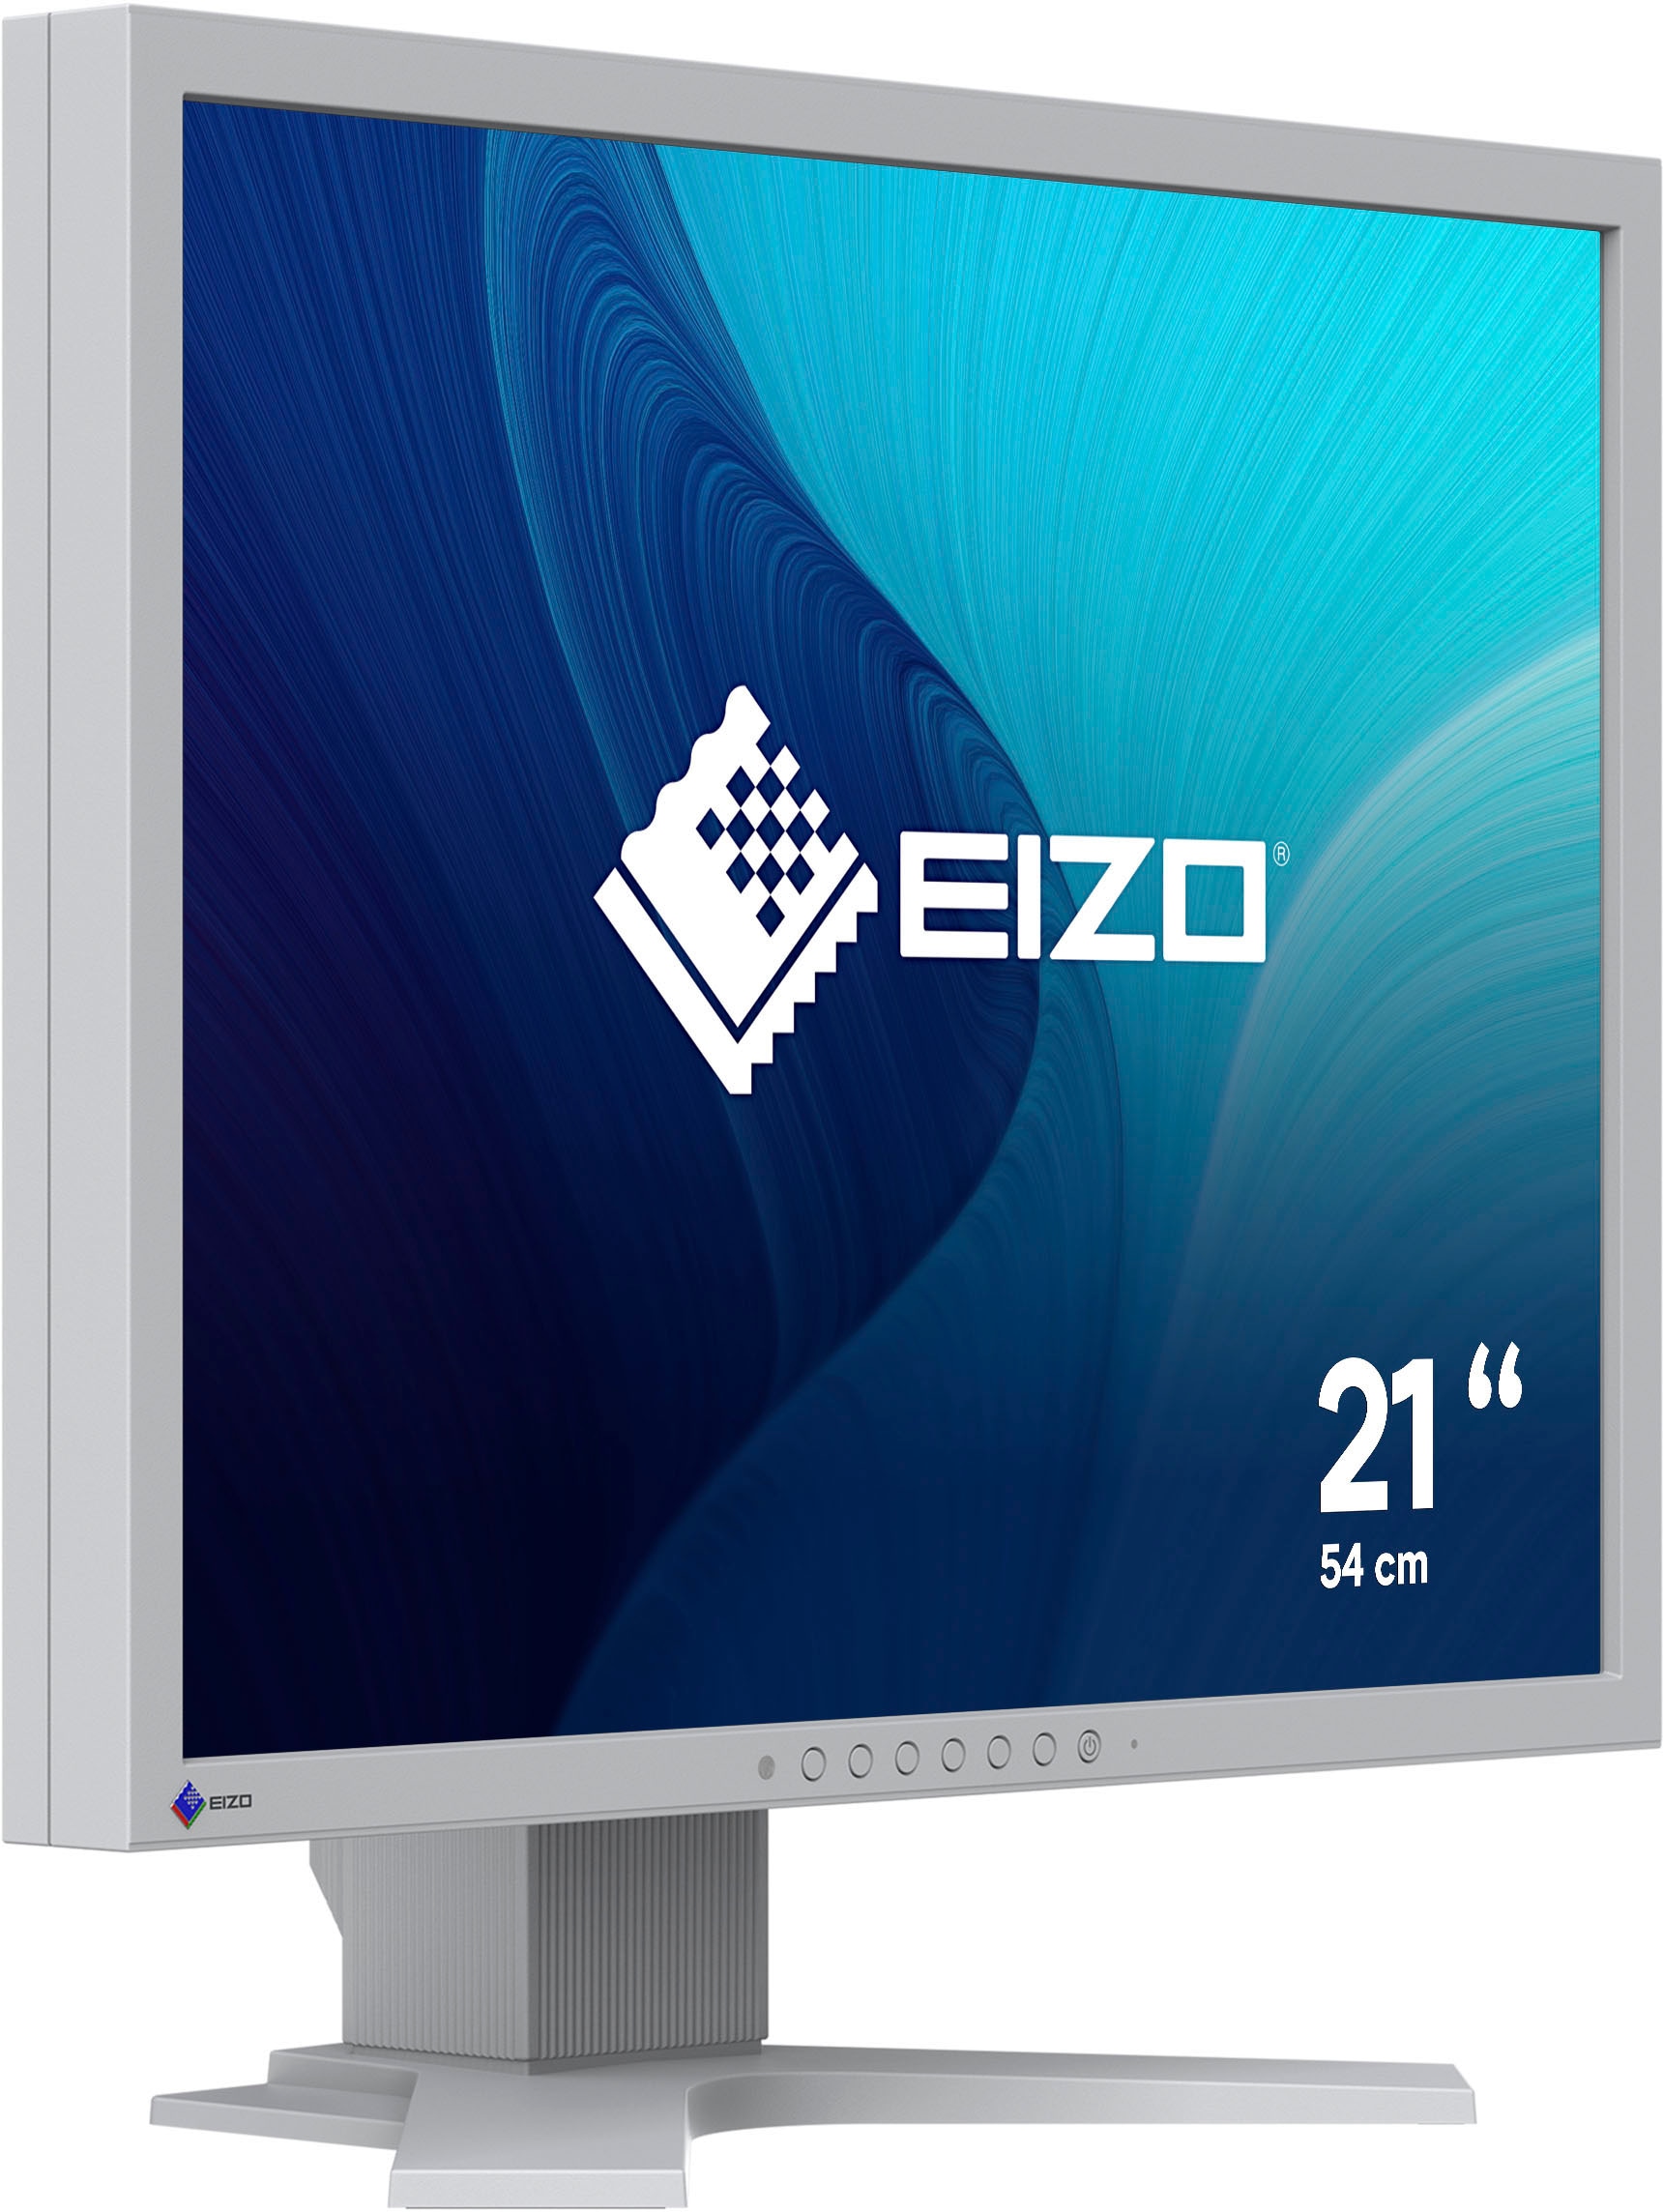 Eizo LED-Monitor »FlexScan S2134«, 54 cm/21 Zoll, 1600 x 1200 px, UXGA, 6 ms Reaktionszeit, 60 Hz